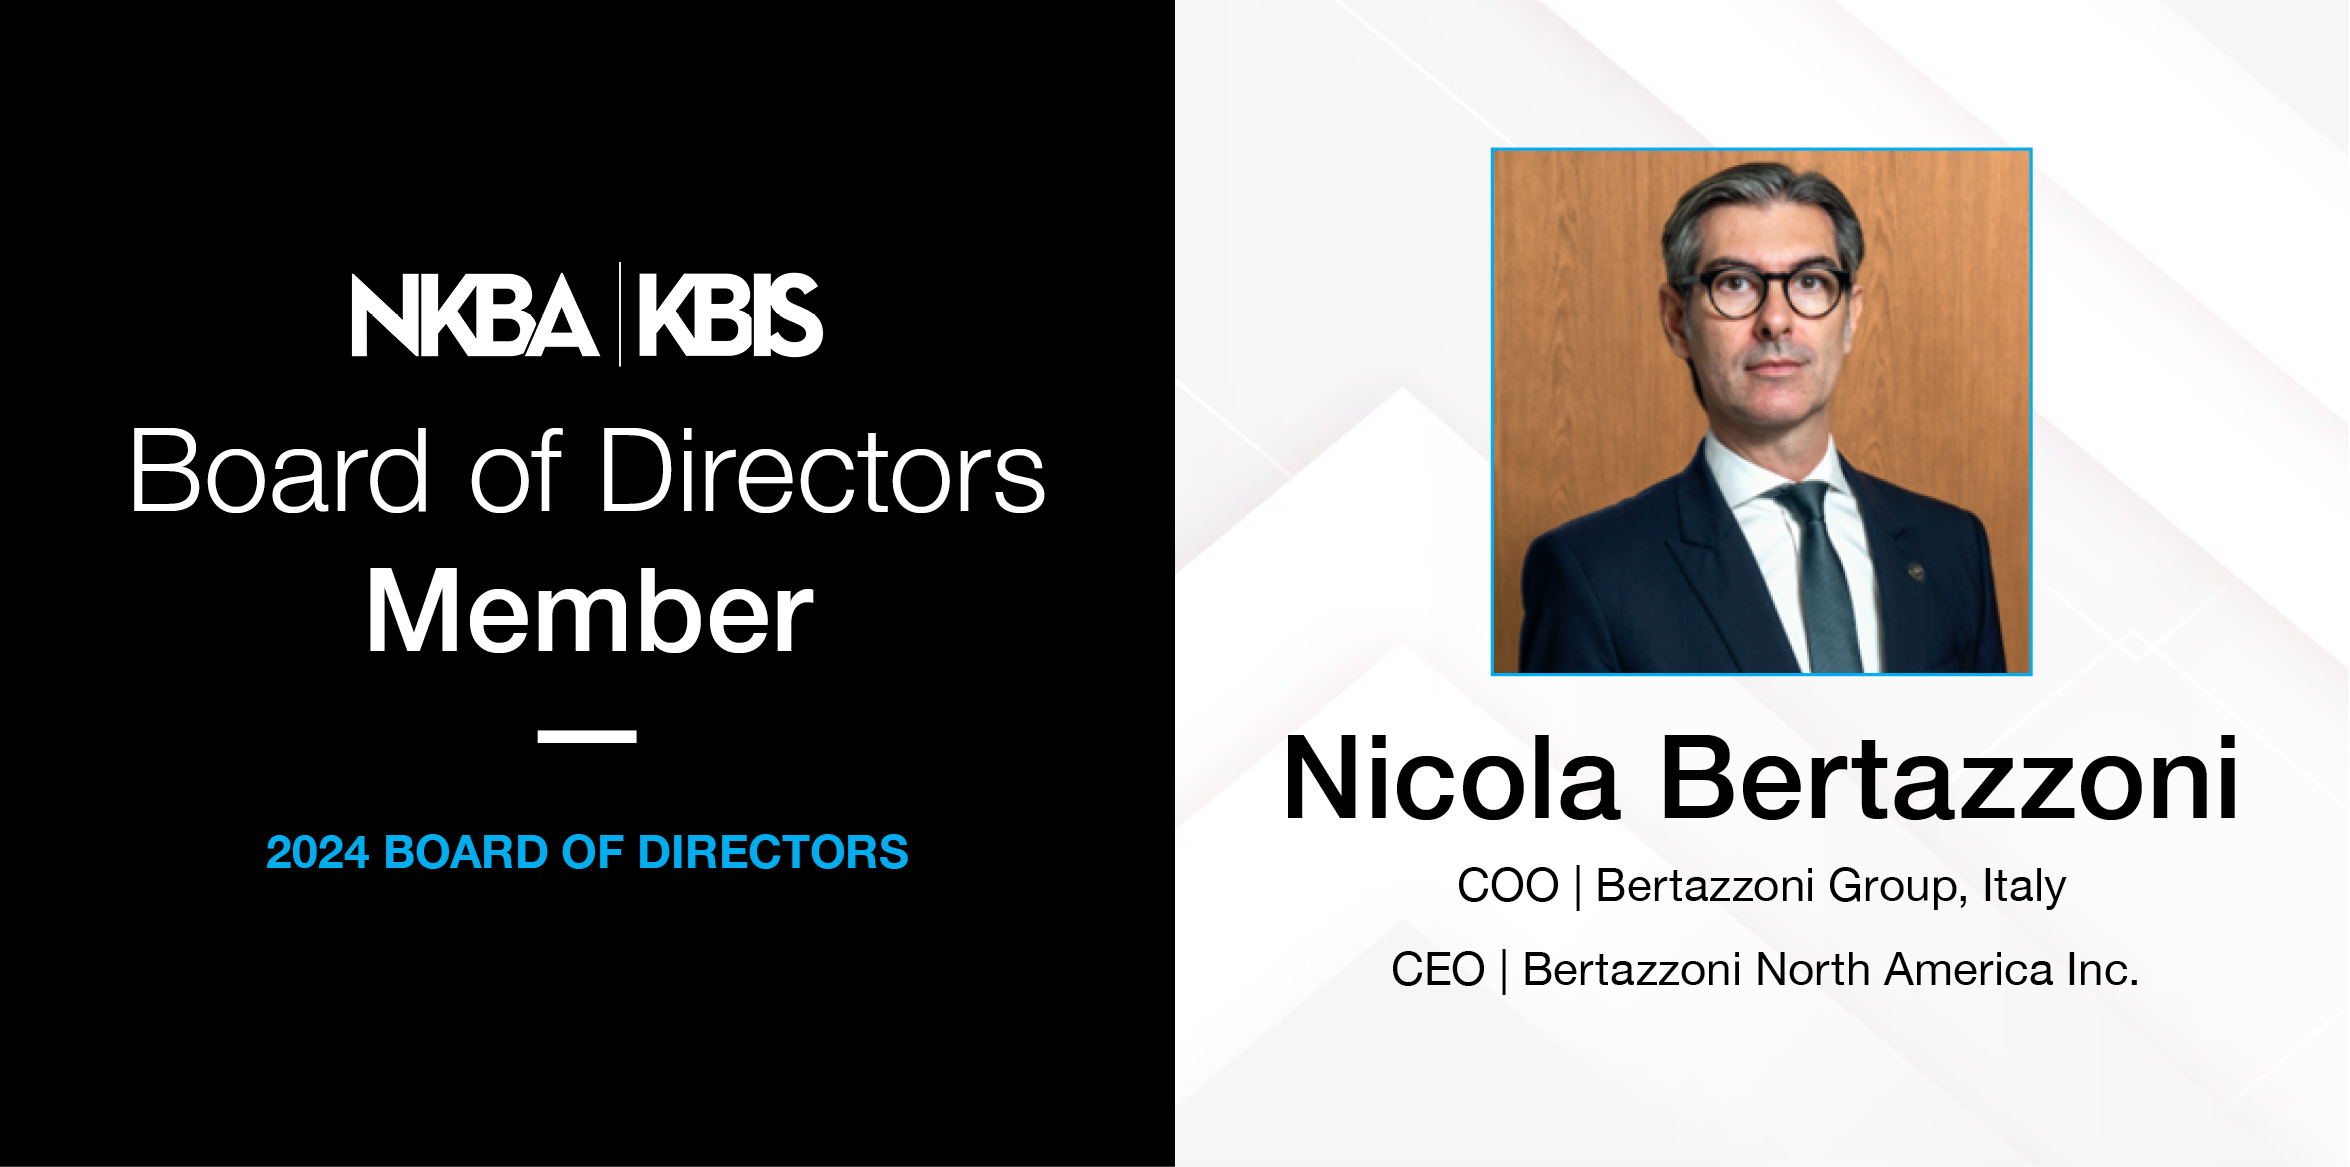 Nicola Bertazzoni nominato nel Consiglio di Amministrazione NKBA | KBIS 2024 - Bertazzoni